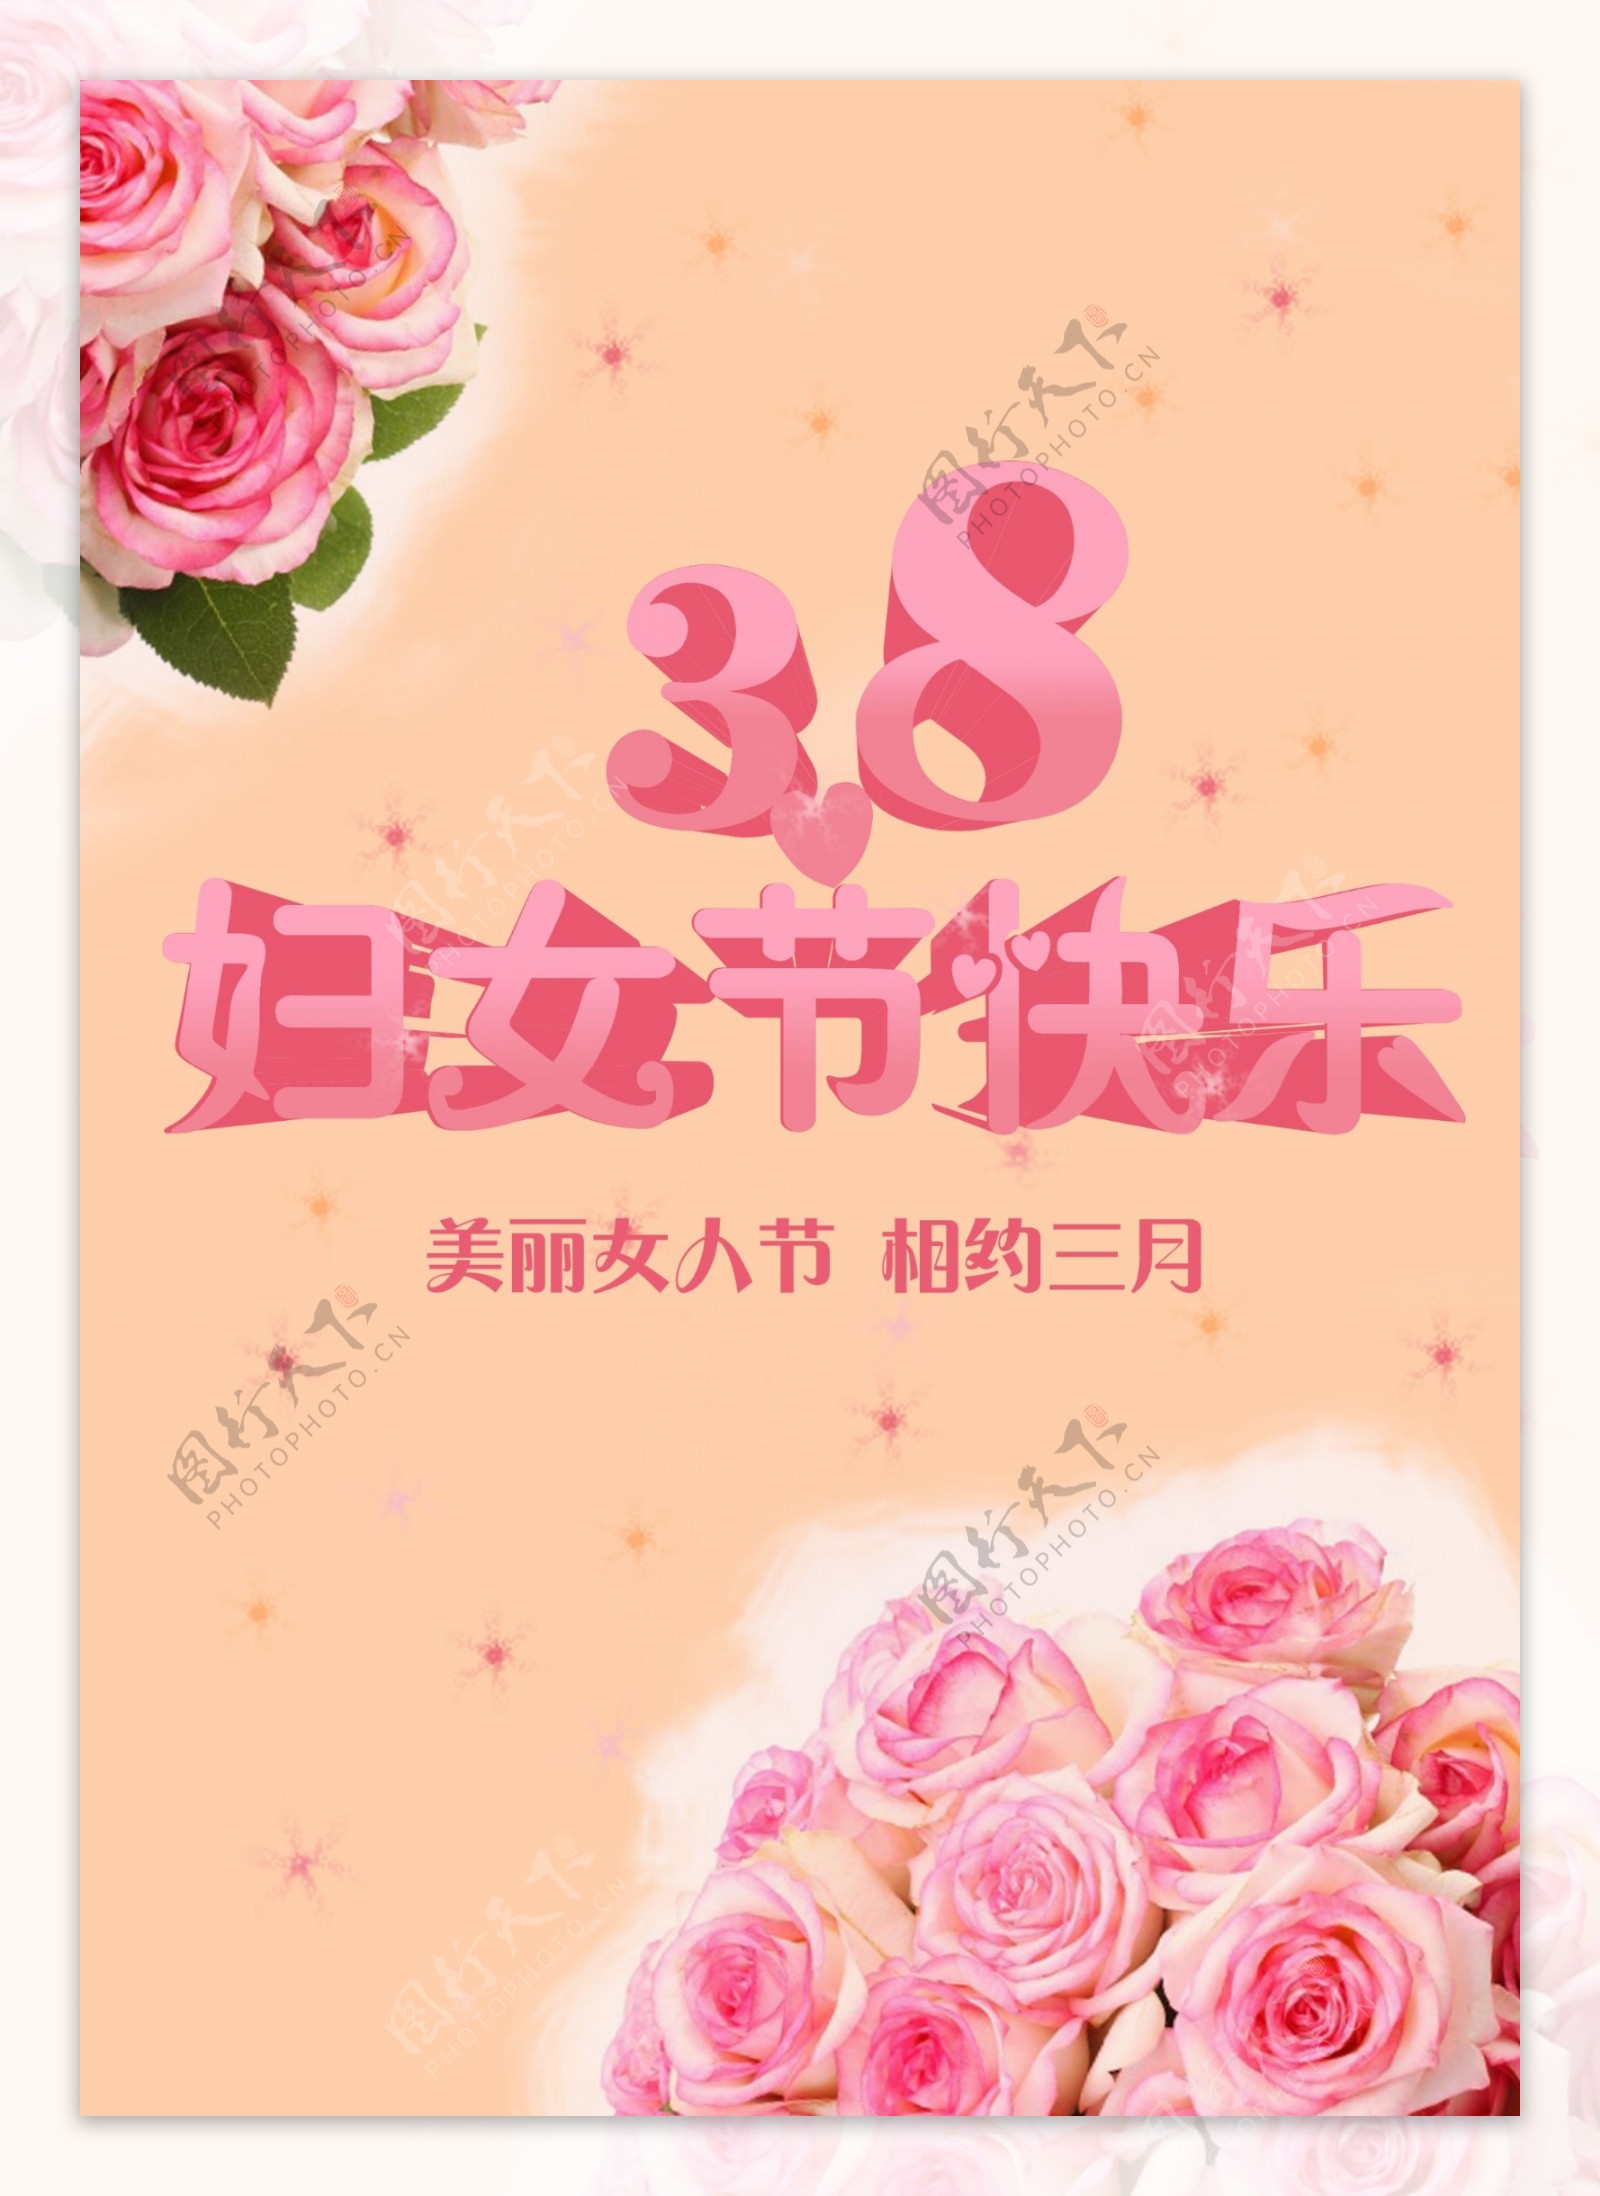 3.8妇女节节日素材商业海报